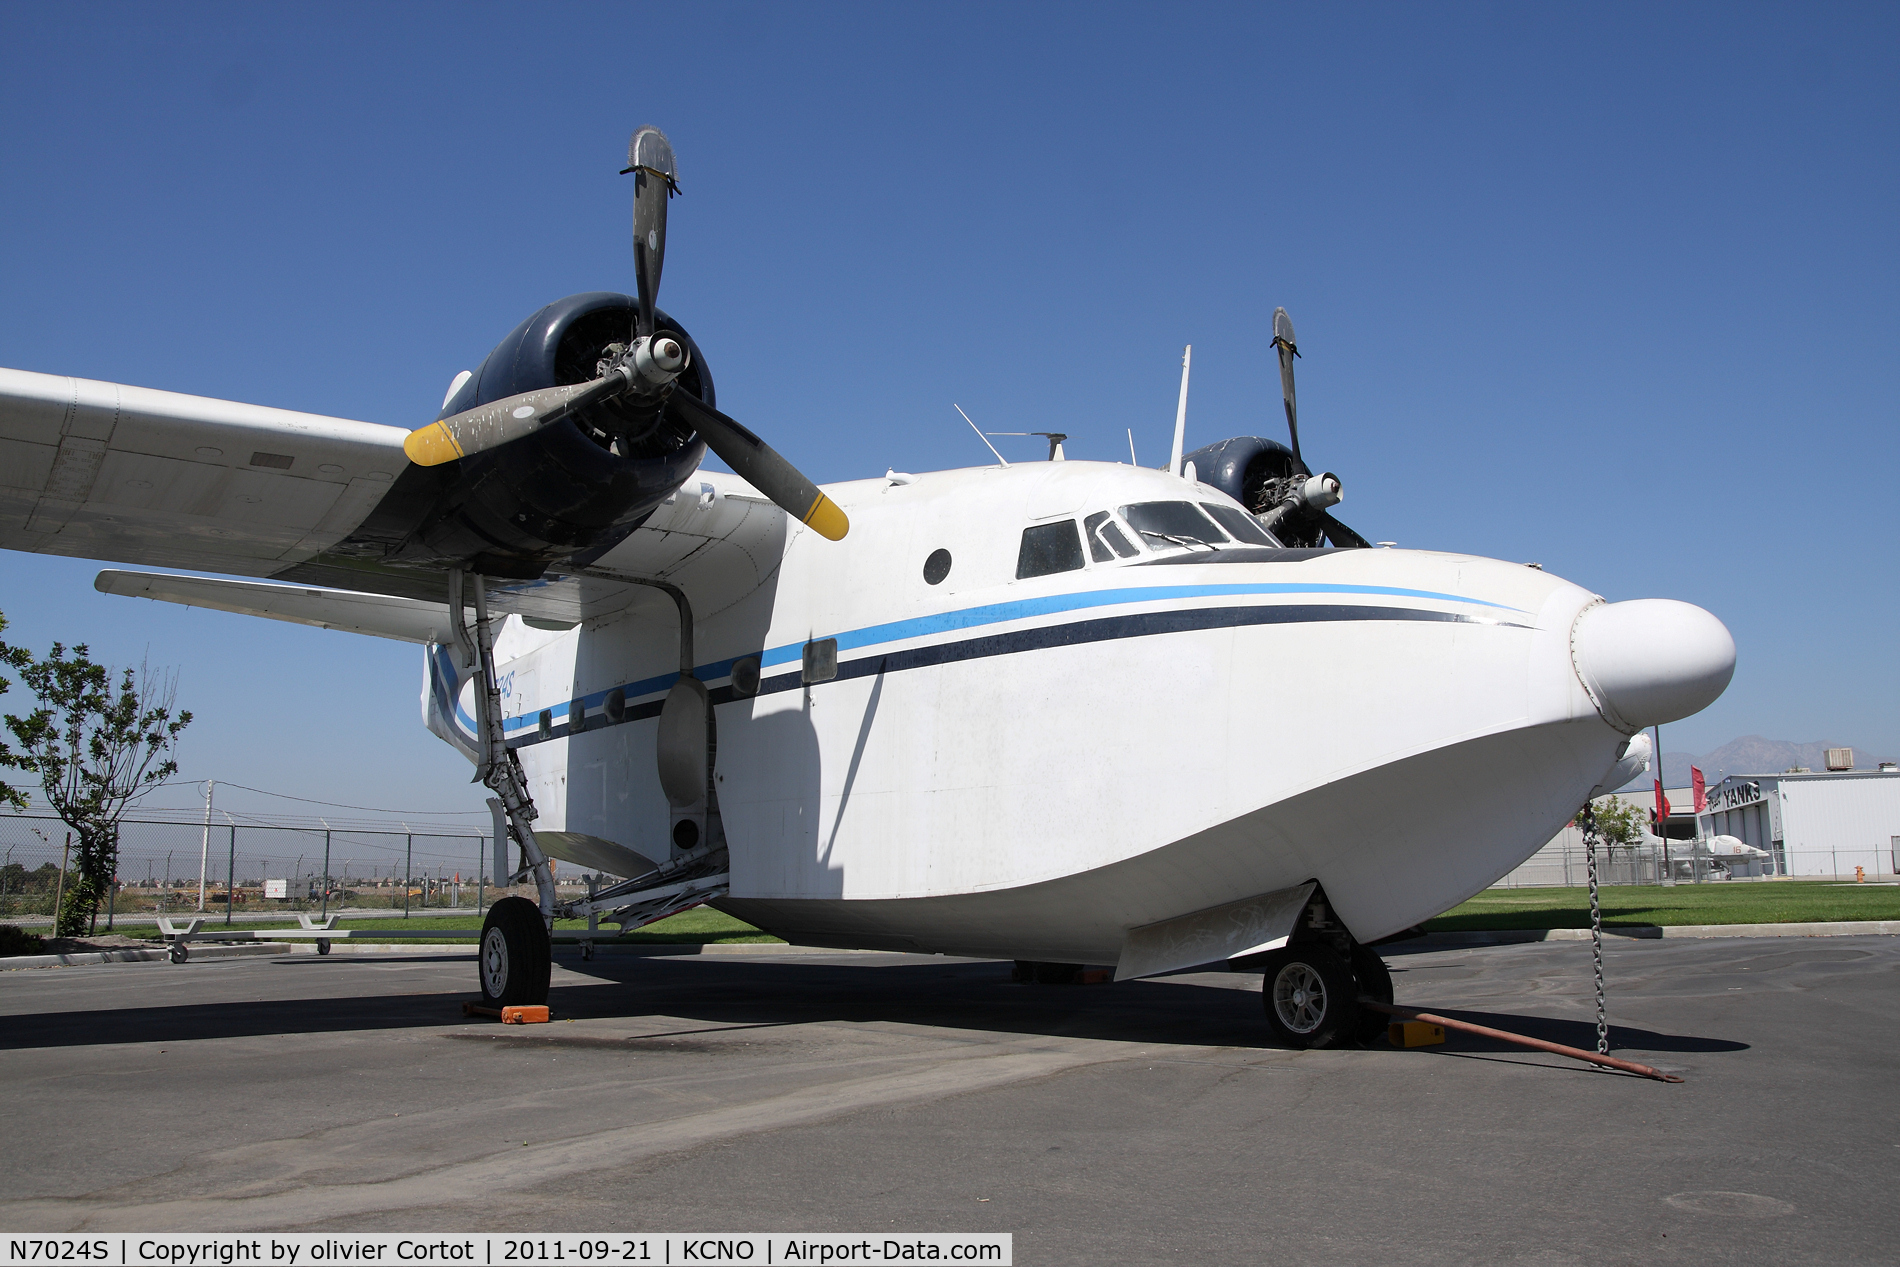 N7024S, Grumman HU-16B Albatross C/N G-258, Welcoming you at the Yanks air Museum